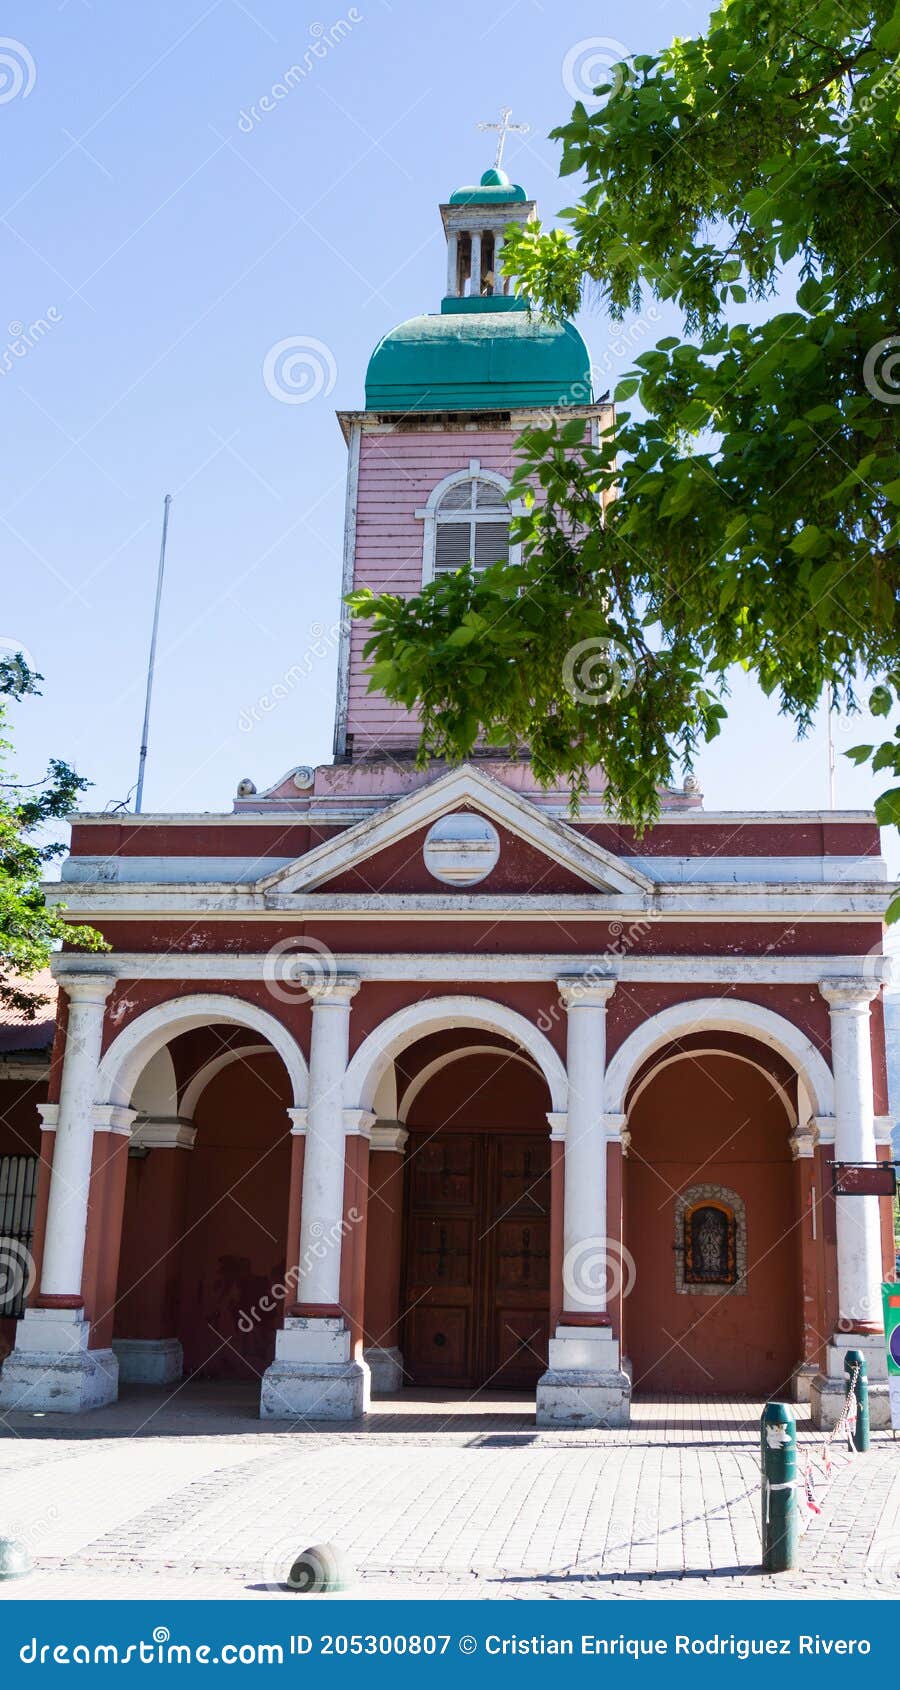 old church of san jose de maipo, located in cajon del maipo, santiago de chile